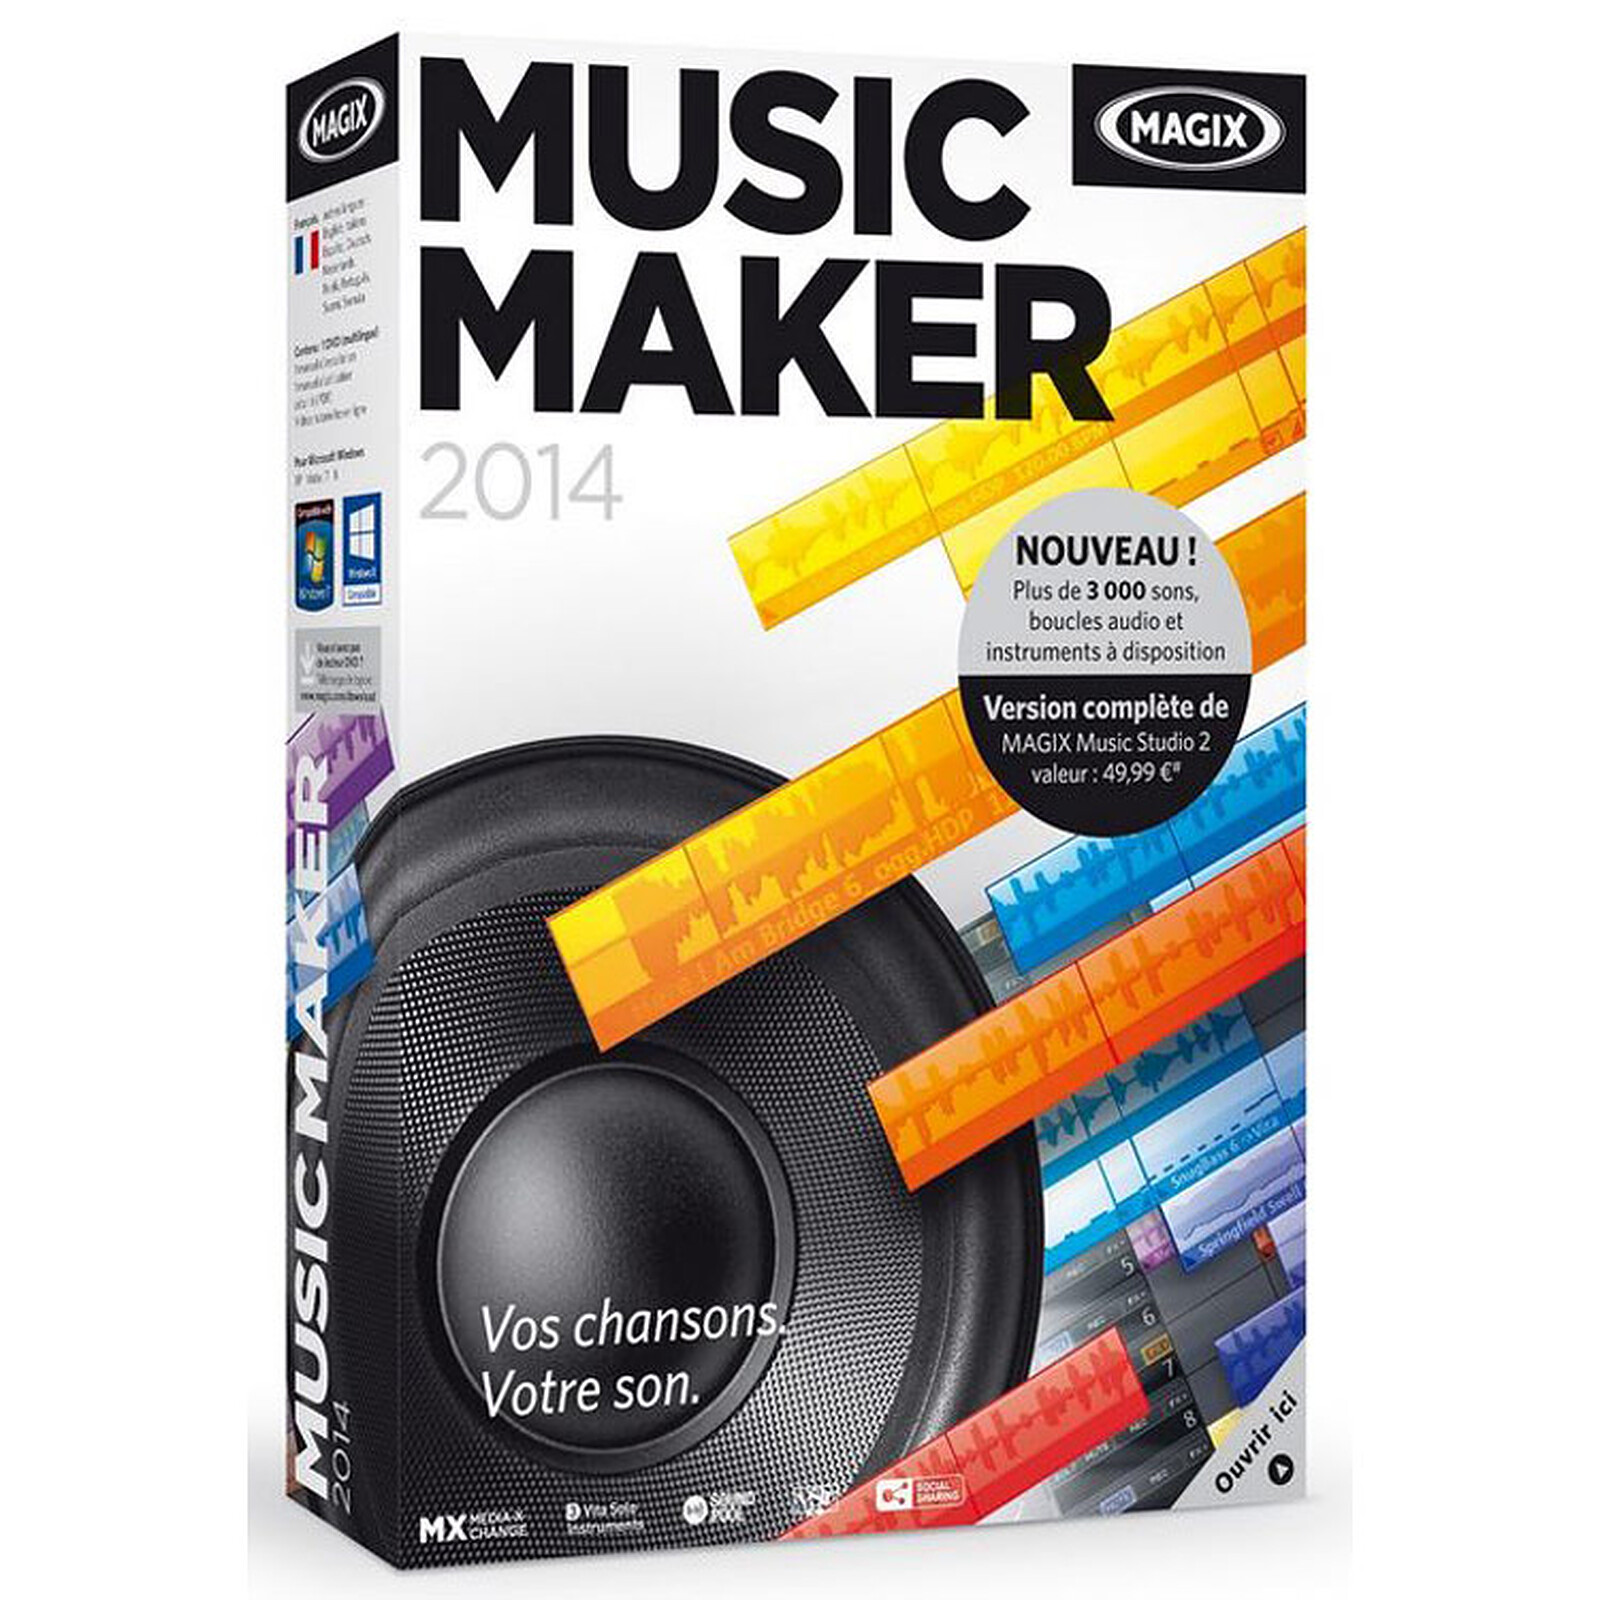 soundpools for magix music maker 2014